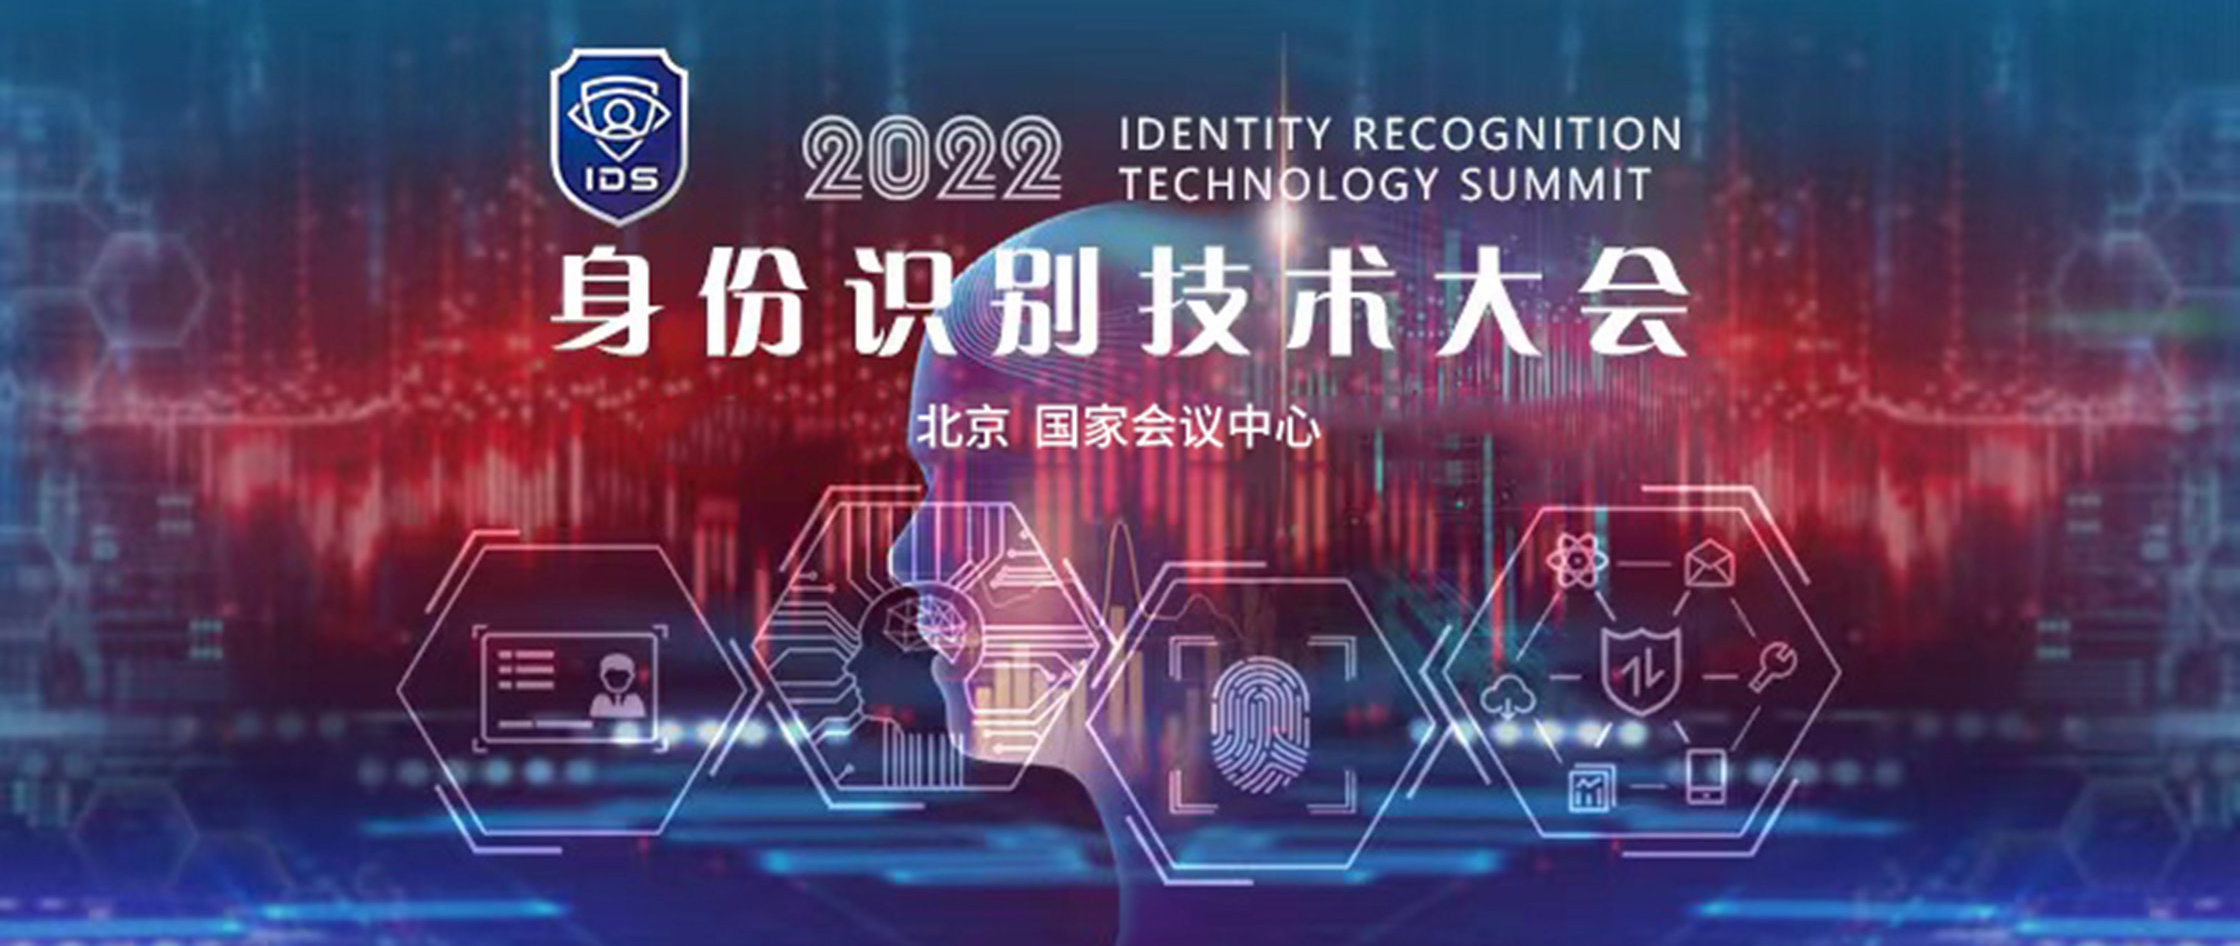 IDS 身份识别技术大会 2022